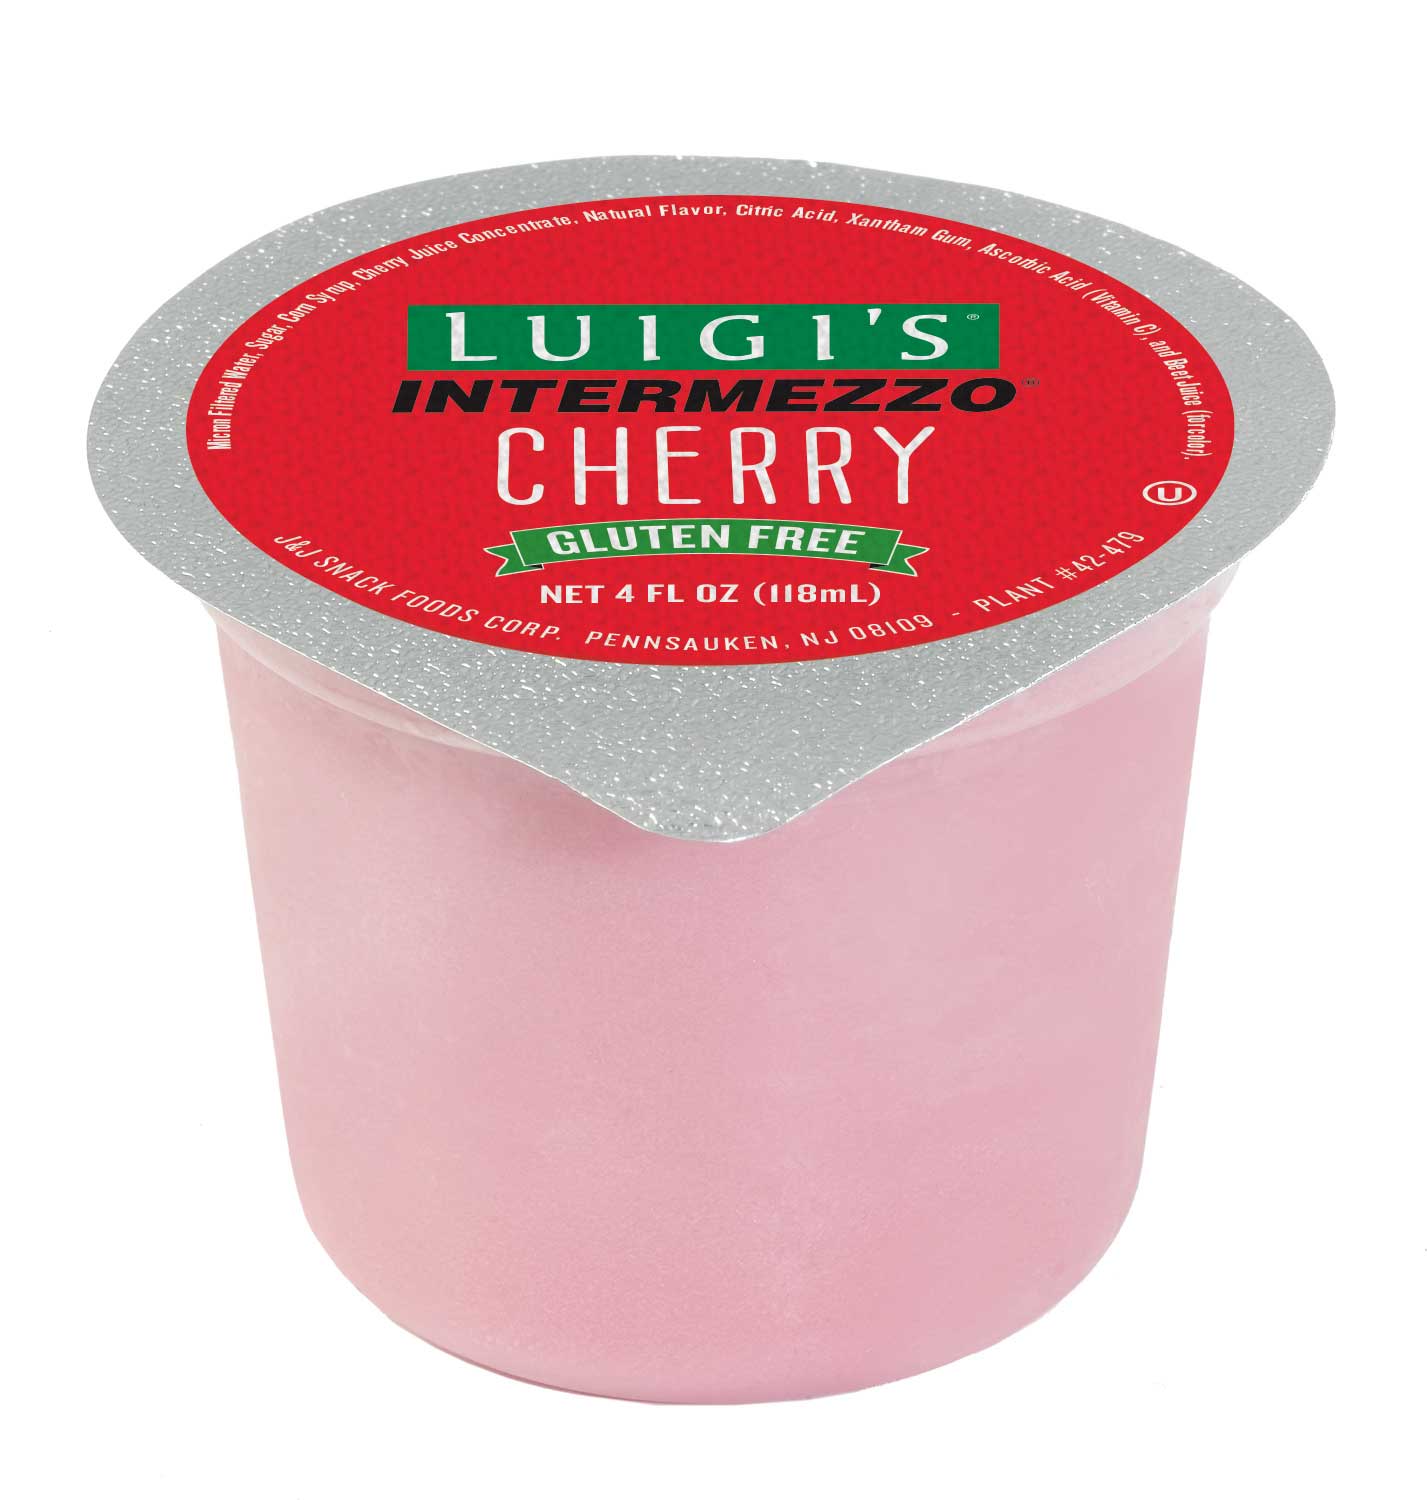 Luigis Intermezzo Cherry Cup, 4 Ounce -- 72 per case.